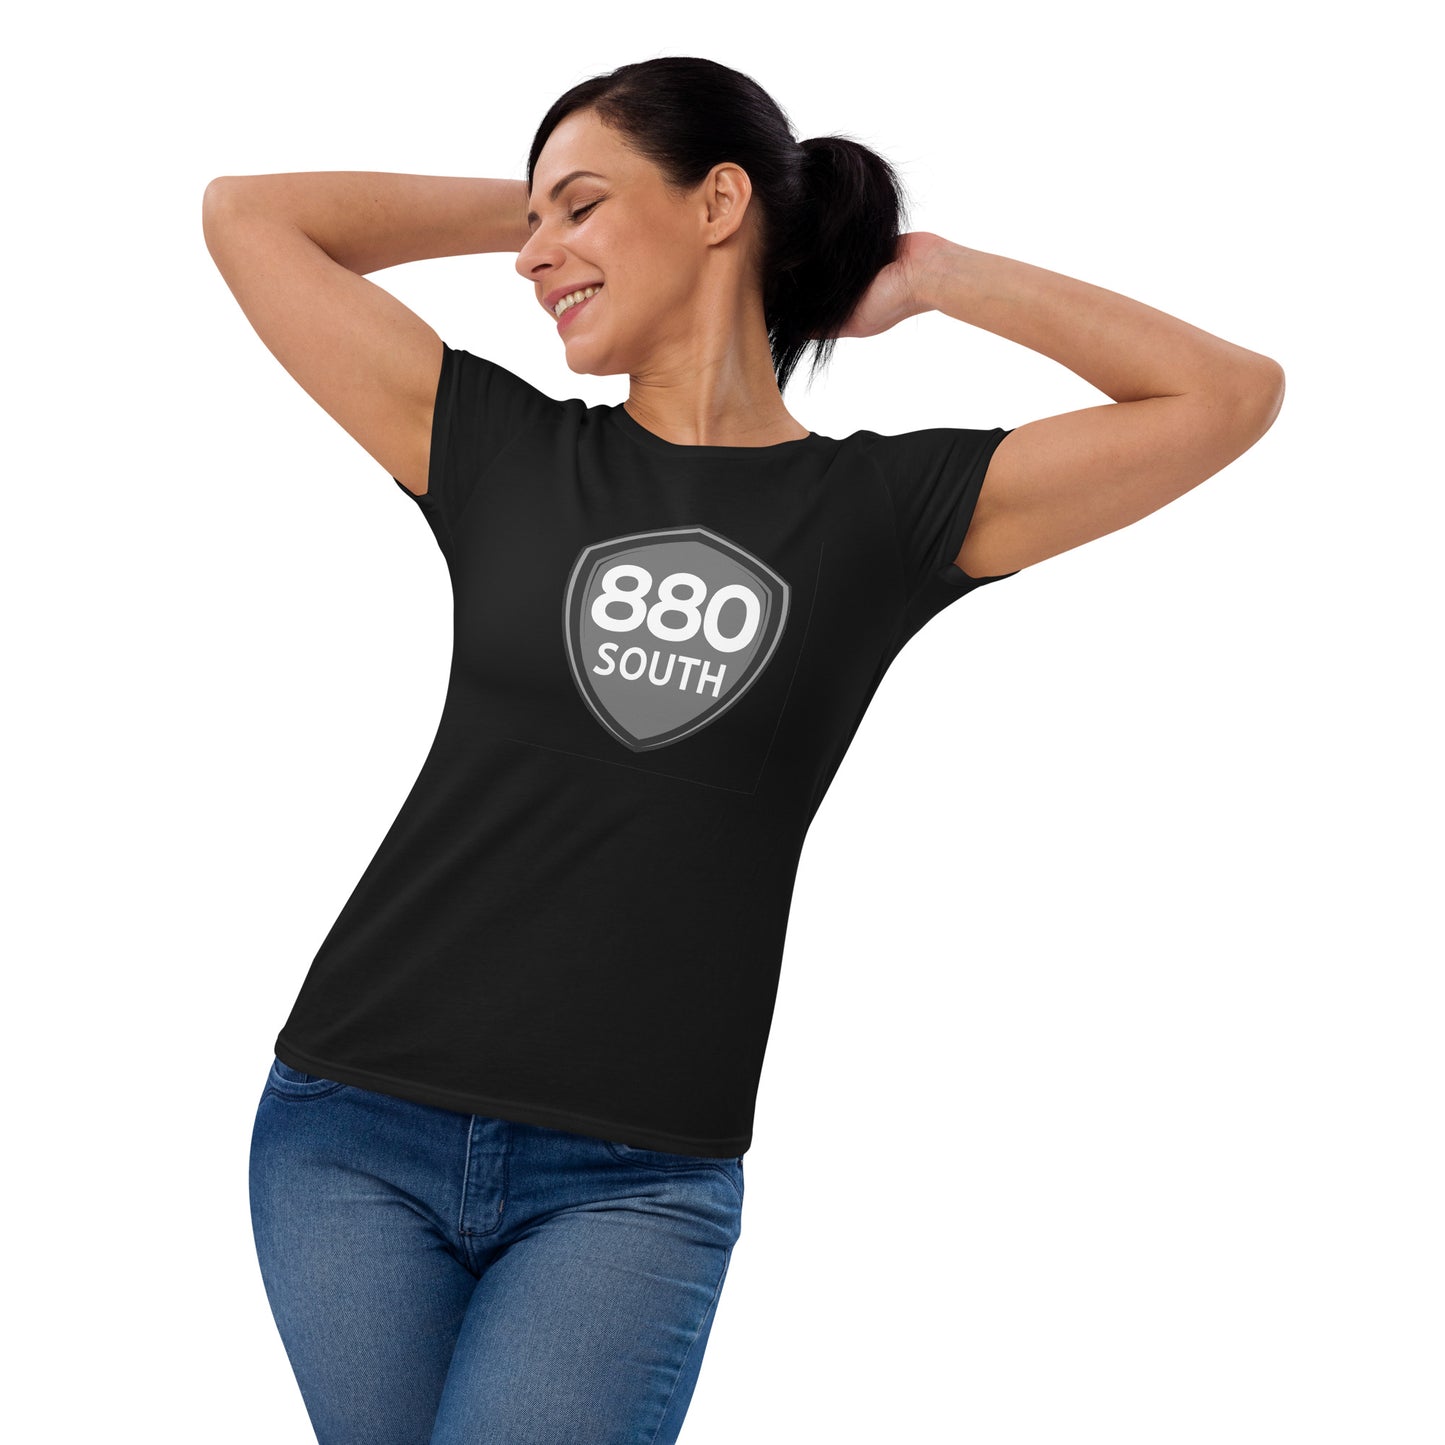 880 South Grey Shield - Women's short sleeve t-shirt